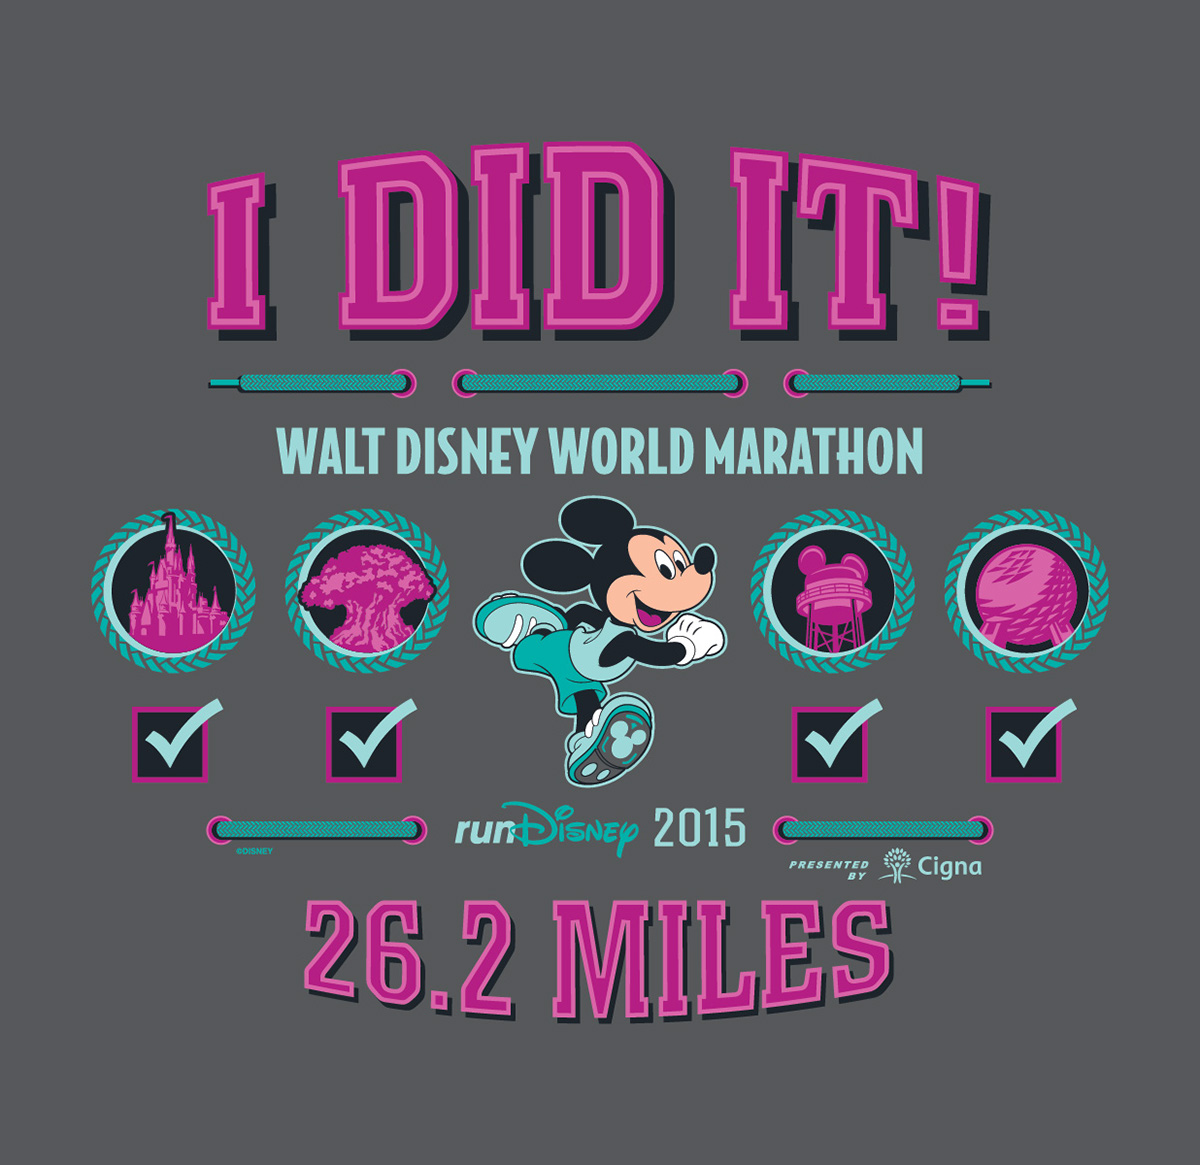 running runDisney Goofy Challenge Dopey Challenge Walt Disney World Marathon Half marathon I Did It